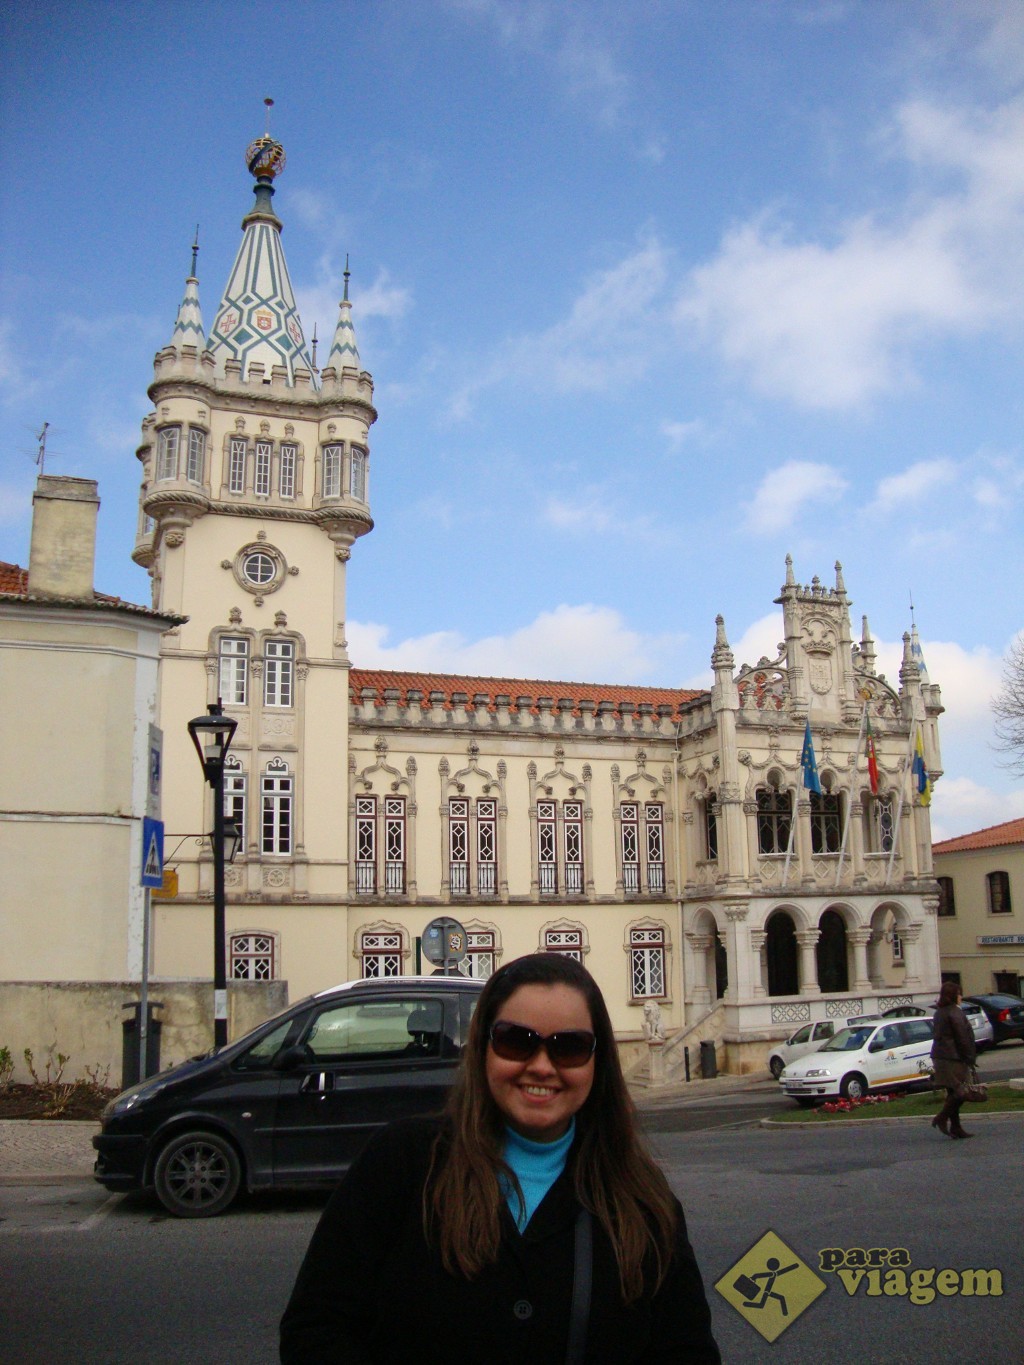 Câmara Municipal de Sintra